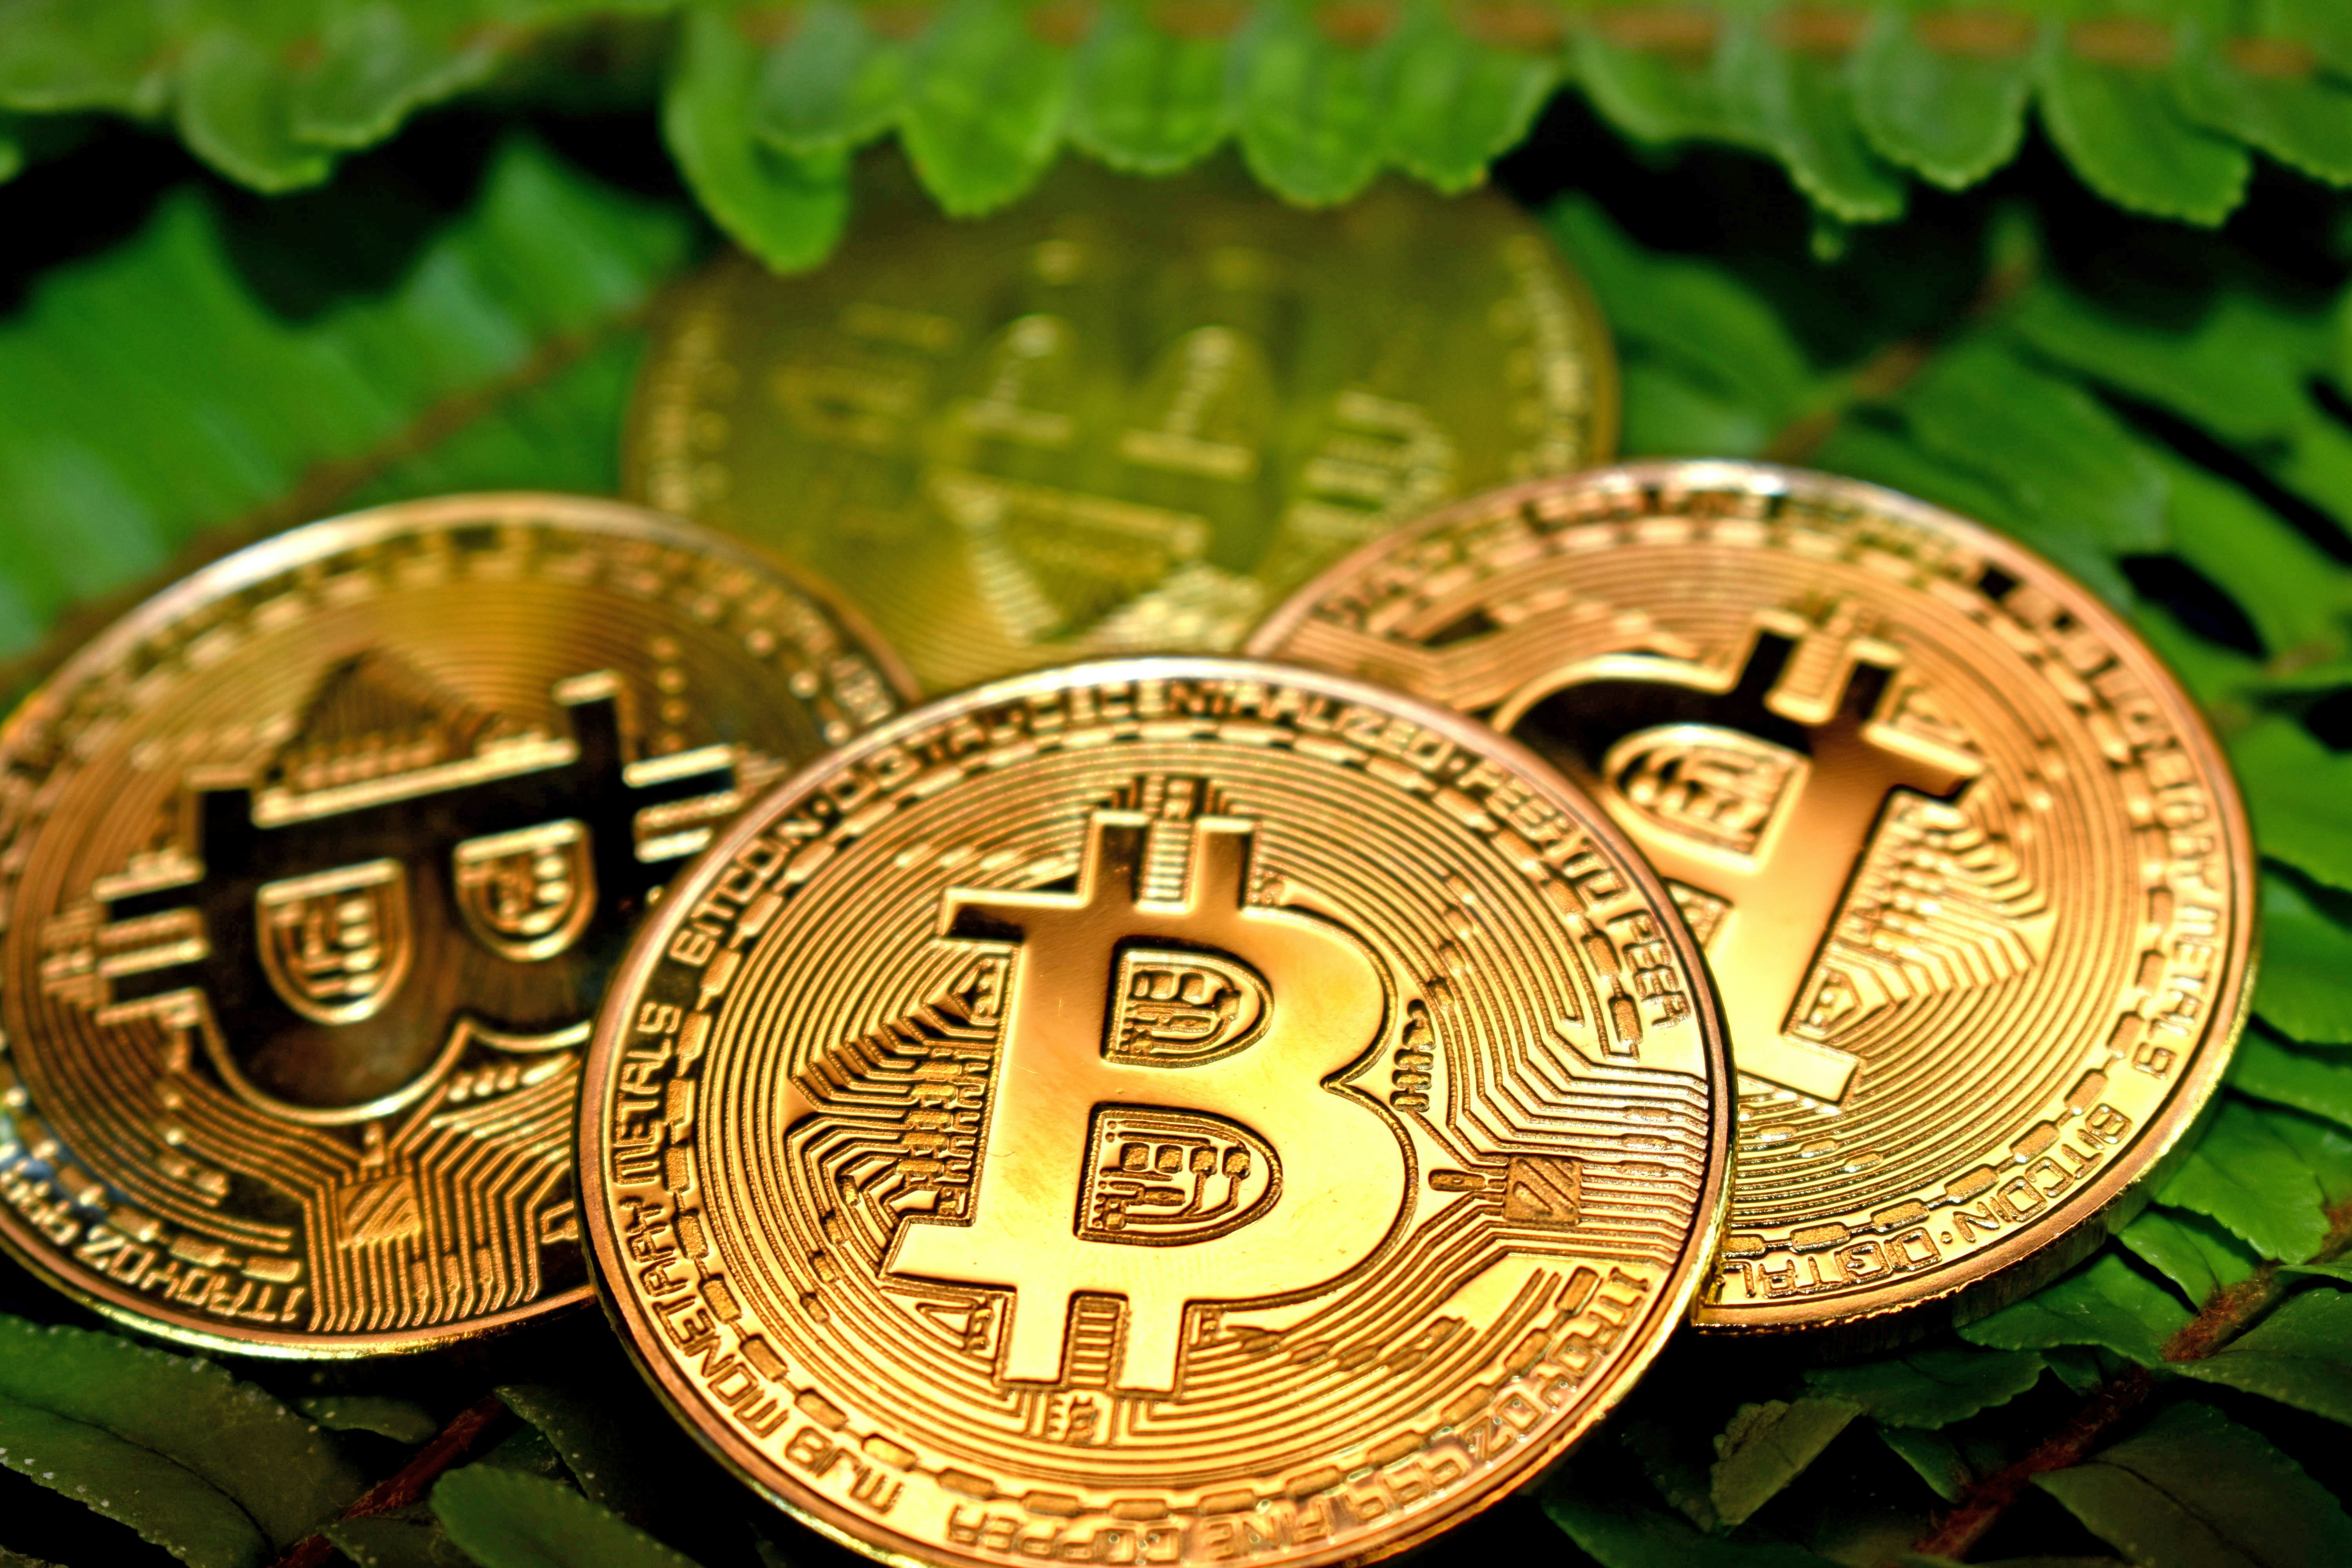 Multiple Bitcoins on a leaf.